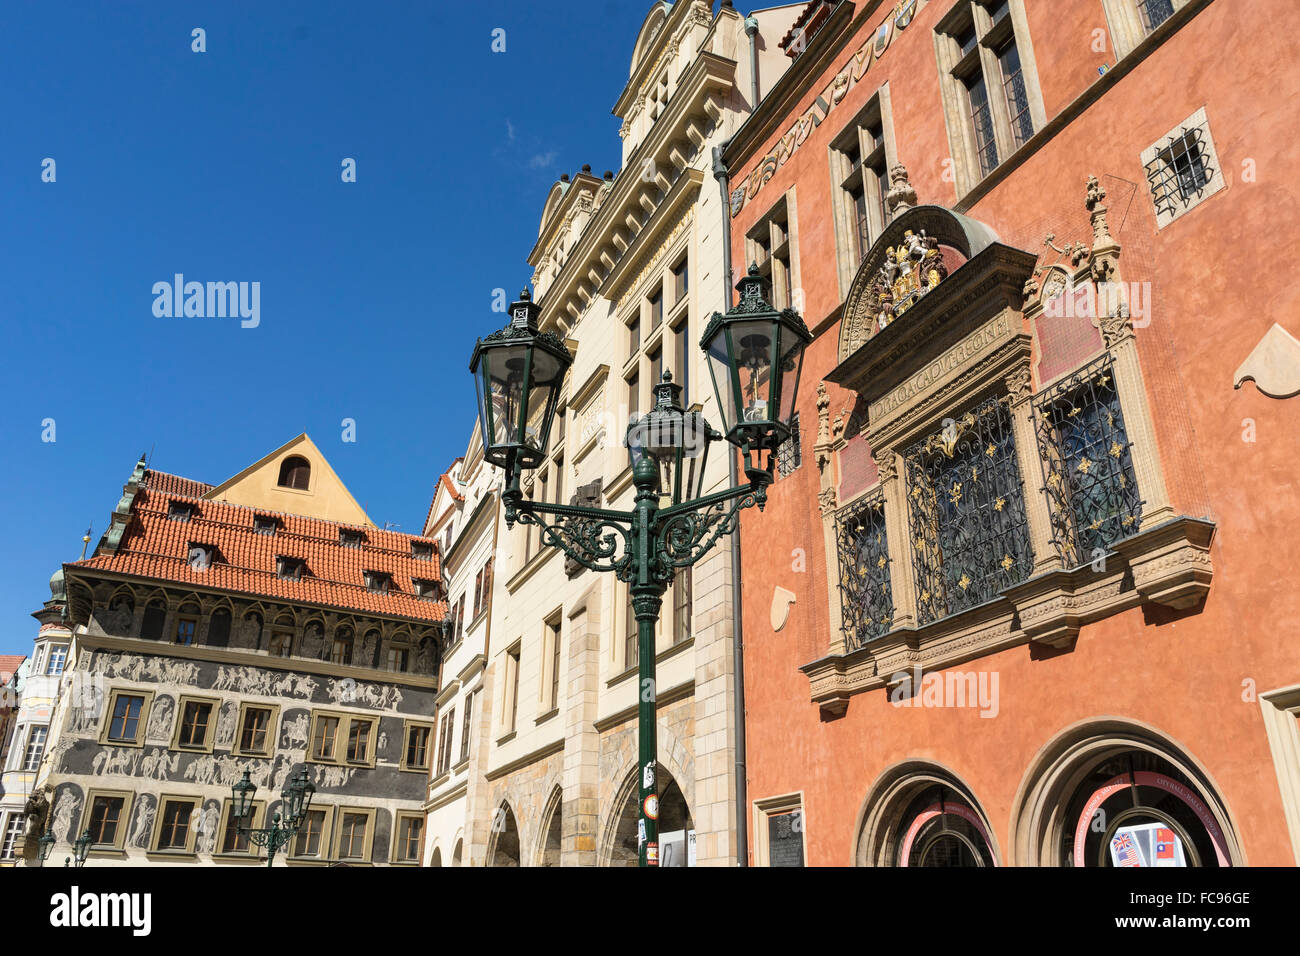 Plaza de la ciudad vieja, Patrimonio Mundial de la UNESCO, Praga, República Checa, Europa Foto de stock